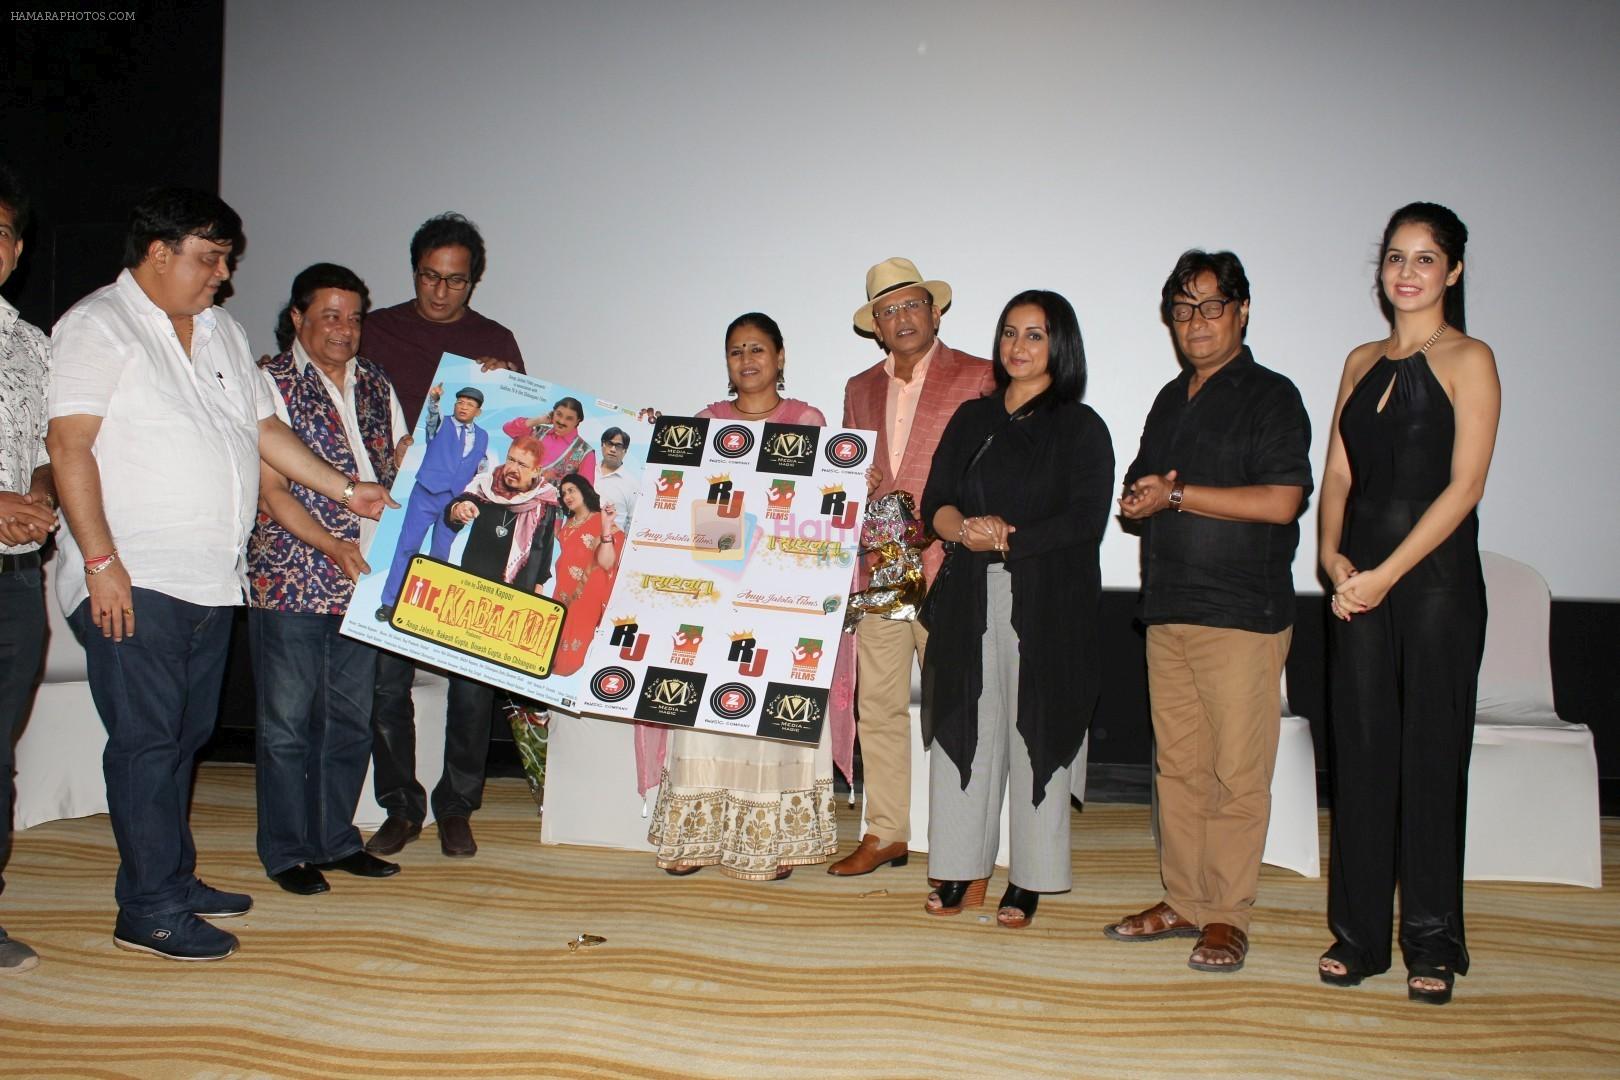 Annu Kapoor, Seema Kapoor At Teaser Release Of Hindi Comedy Film Mr. Kabaadi on 12th